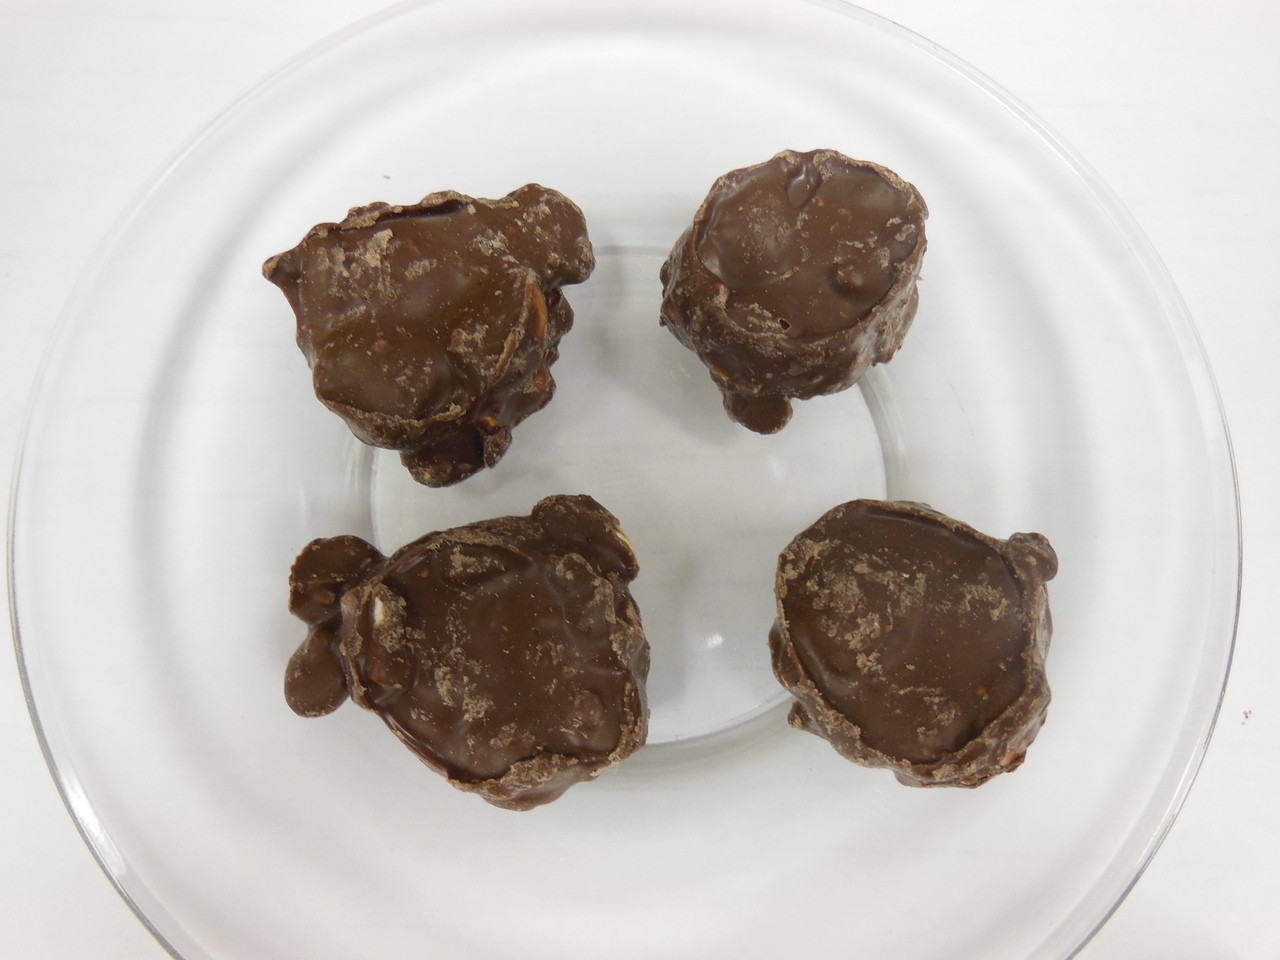 Hand Made Dark Chocolate Truffles - Mirabelle Plum Cream • Oh! Nuts Gourmet  Hand Made Chocolate Truffles • Bulk Chocolate • Oh! Nuts®